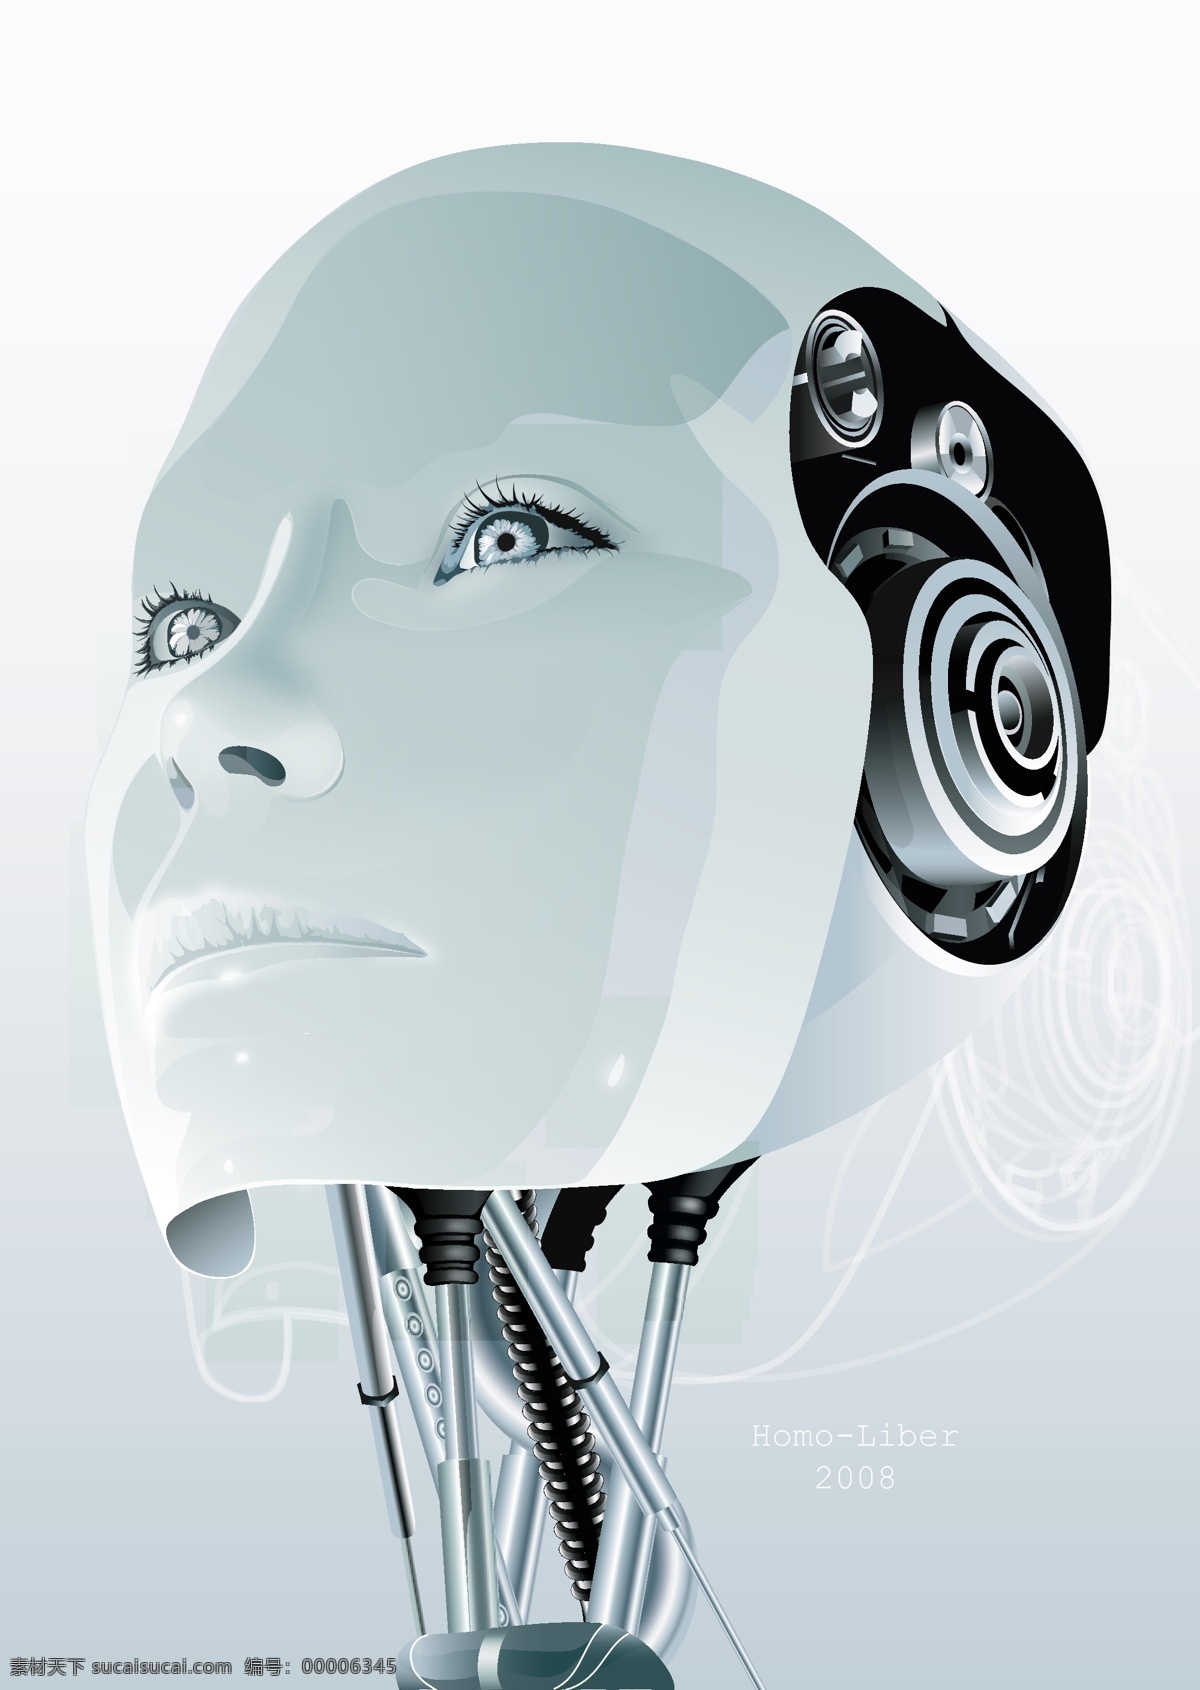 超酷 女性 机器人 头部 vector 机器人素材 矢量素材 robot 矢量机器人 机器人零件 矢量图 矢量人物